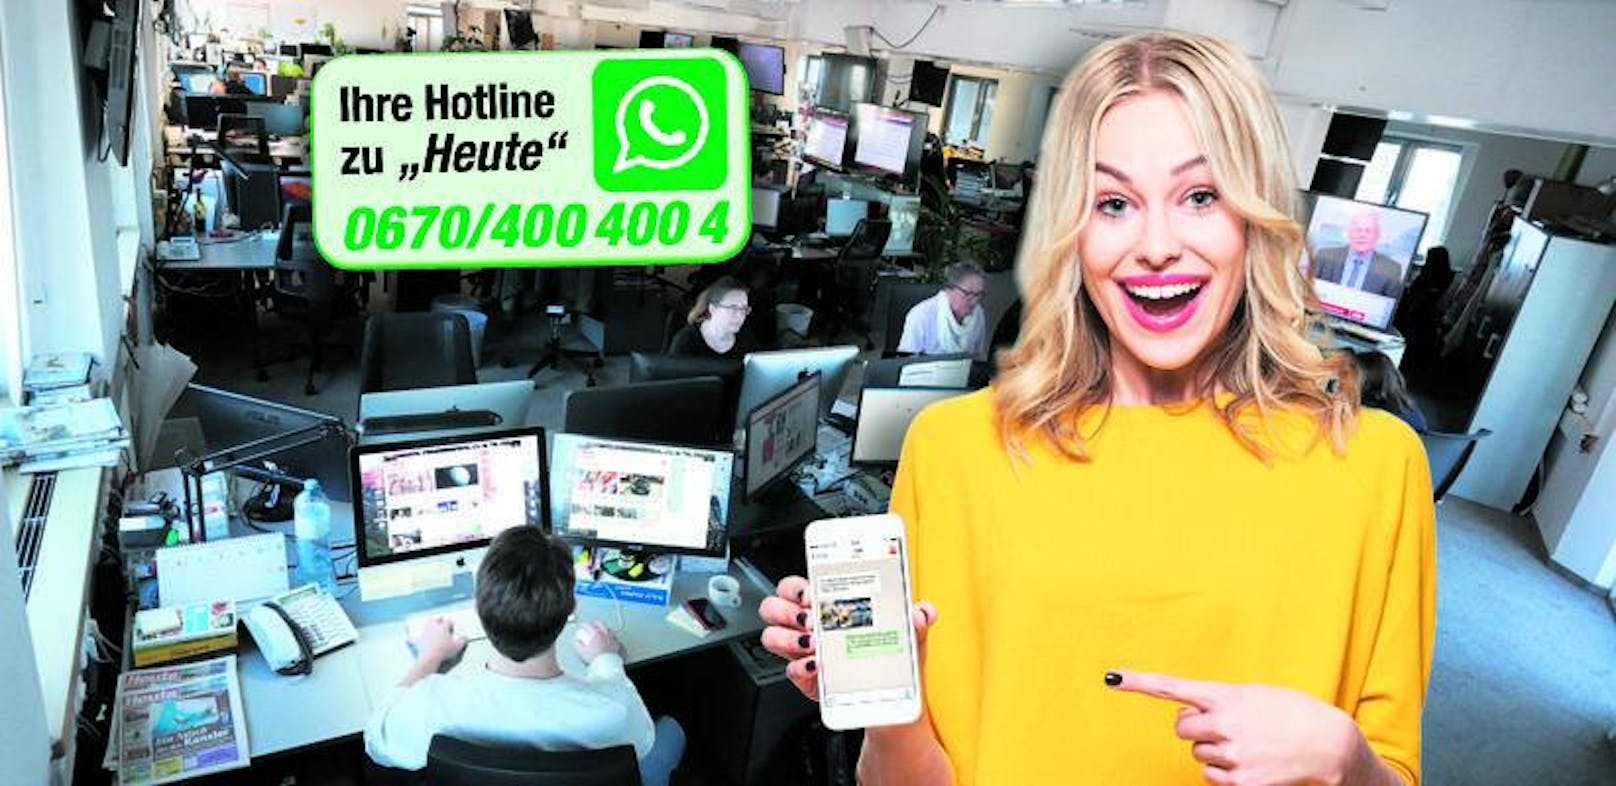 Whatsapp-Nummer einspeichern, Foto oder Video schicken - und 50 Euro gewinnen.